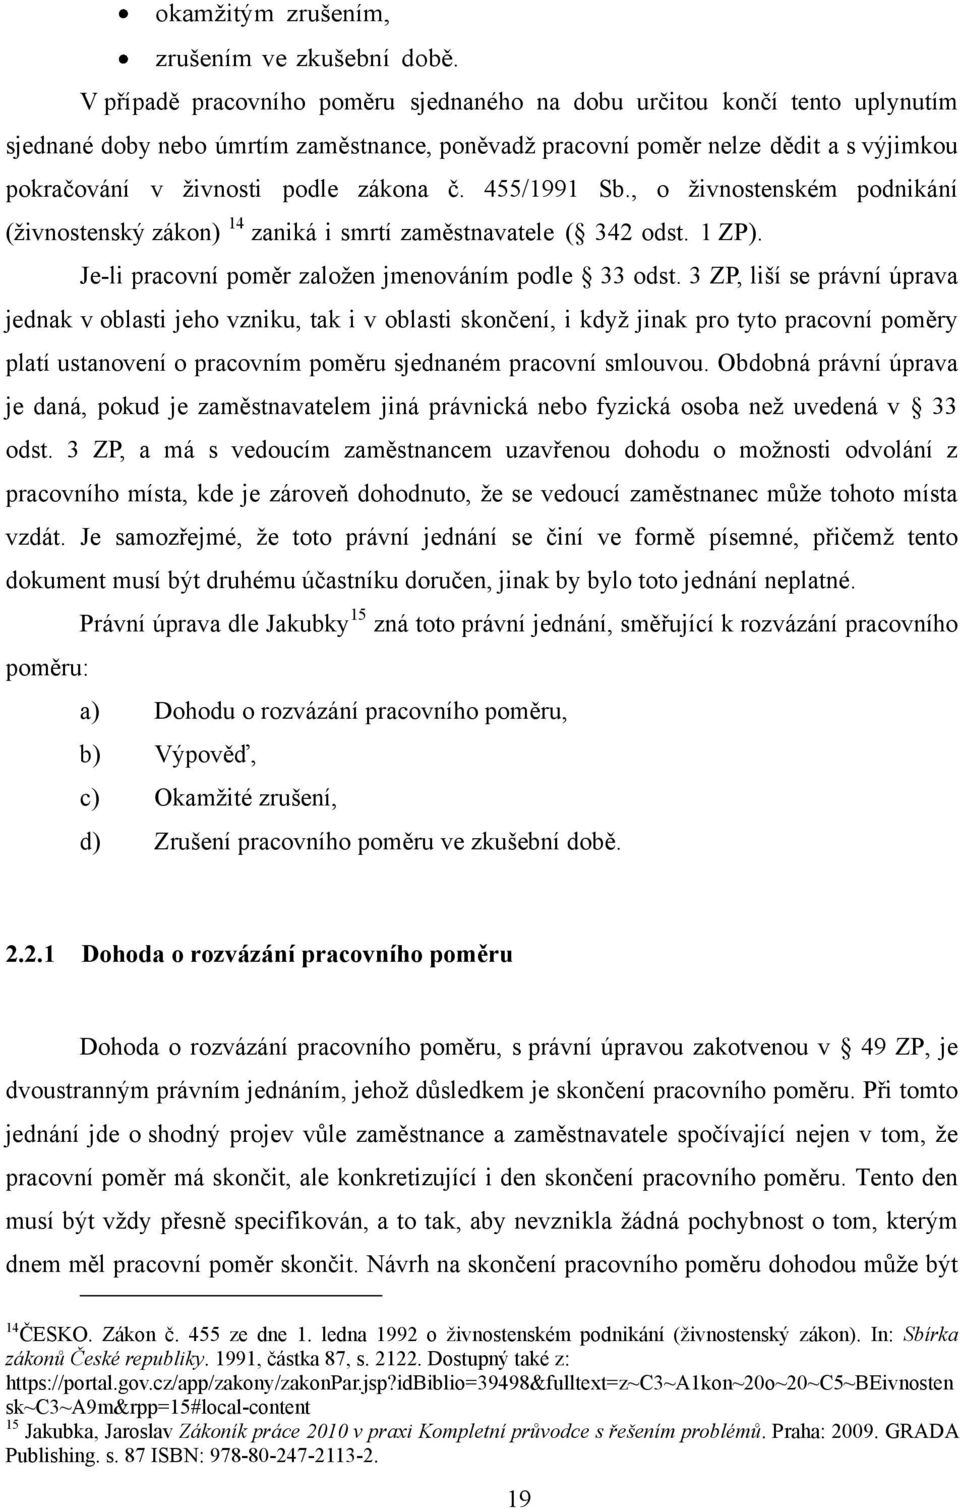 zákona č. 455/1991 Sb., o ţivnostenském podnikání (ţivnostenský zákon) 14 zaniká i smrtí zaměstnavatele ( 342 odst. 1 ZP). Je-li pracovní poměr zaloţen jmenováním podle 33 odst.